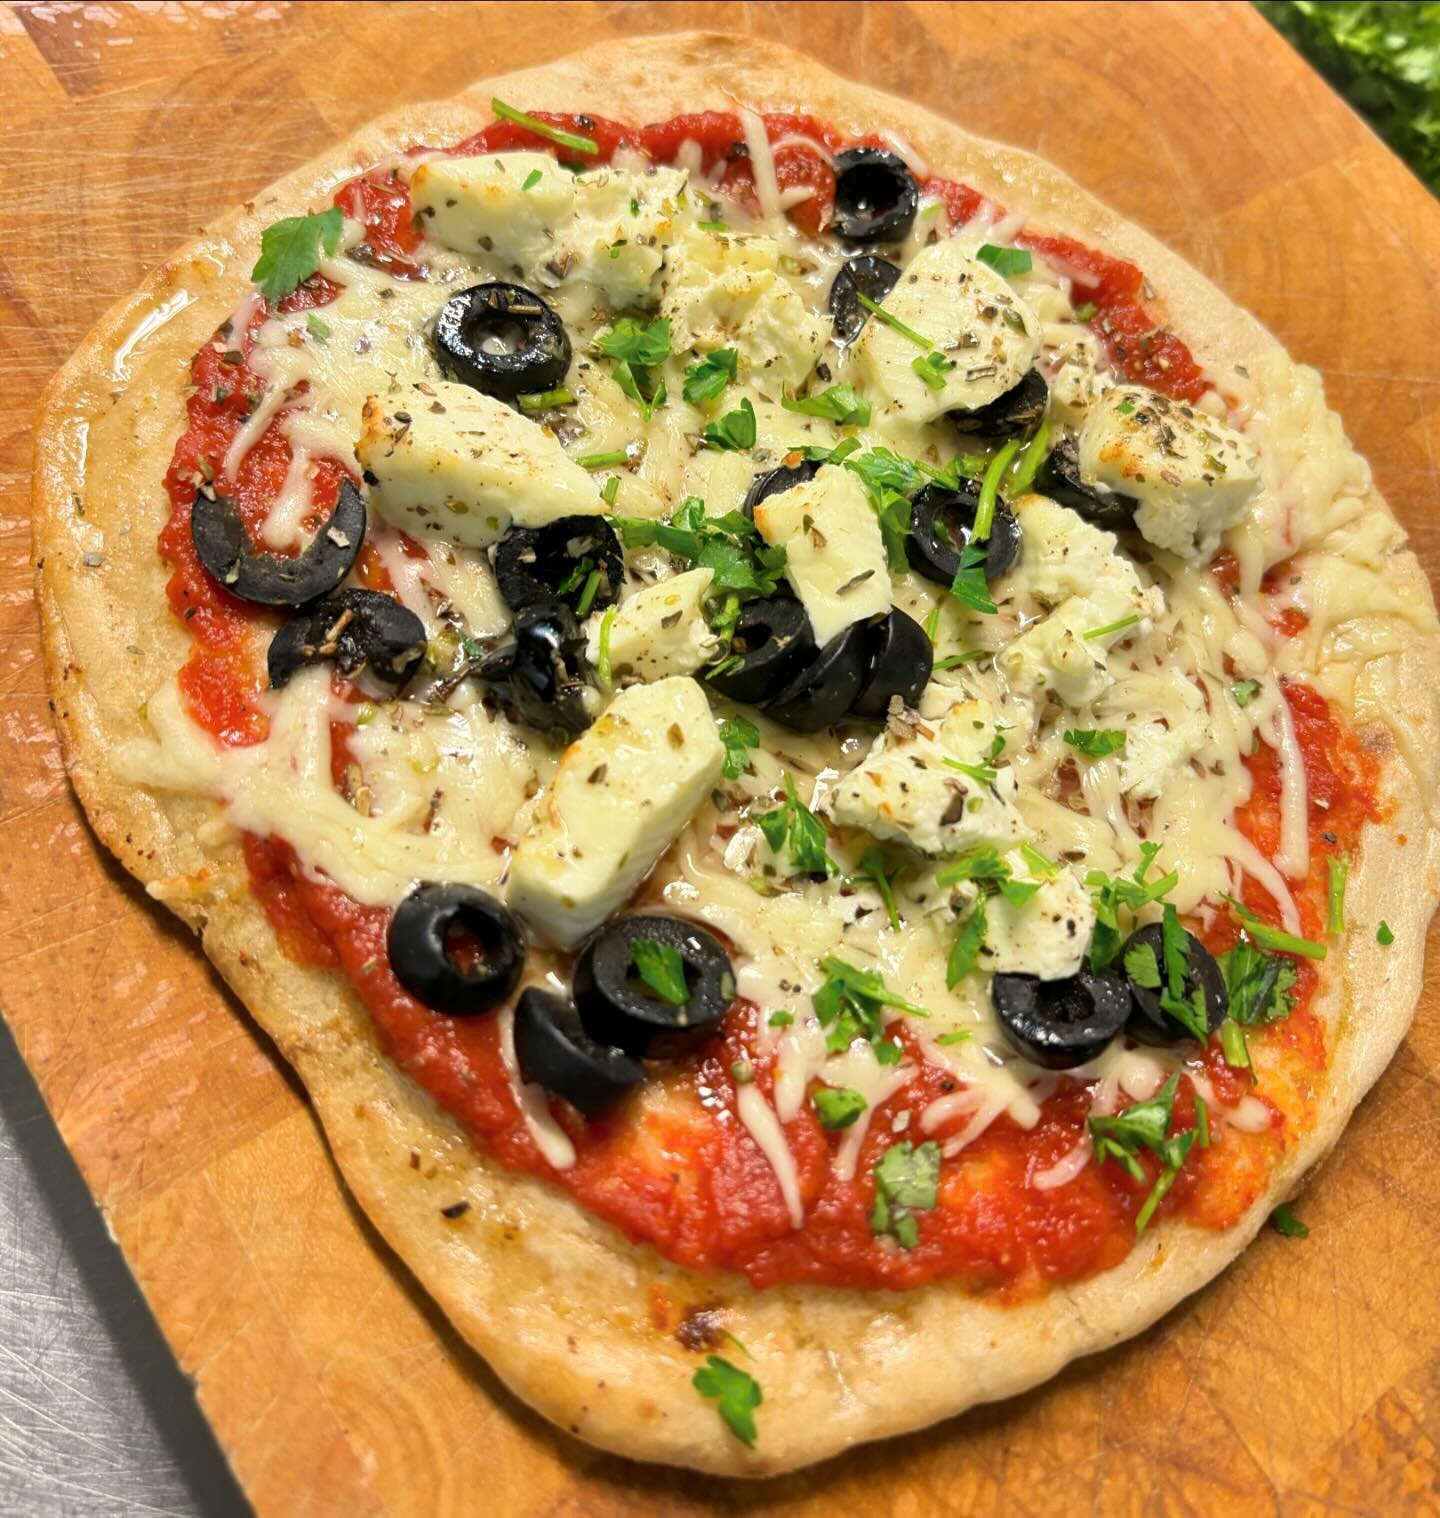 Onze pita pizza 🍕🇬🇷 als Griekse tapa! 😍
Komt u snel proeven?

Reserveren kan via onze website 
www.restaurant-limani.nl of klik op de knop in onze bio!

#grieksetapas #wijkbijduurstede